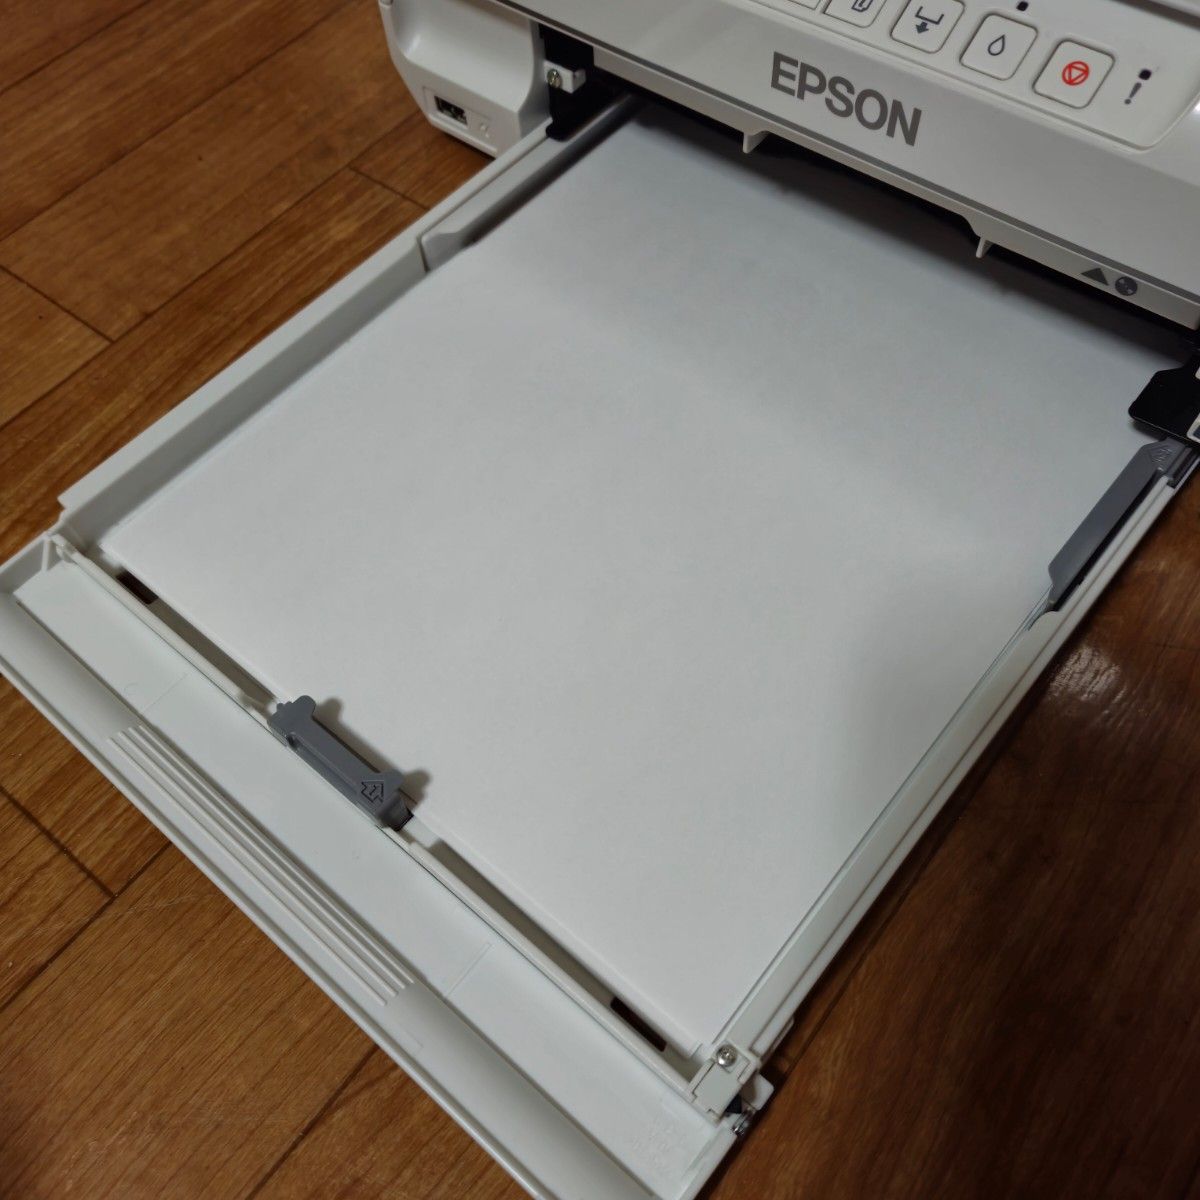 エプソン プリンター A4 インクジェット カラリオ EP-306 ジャンク品